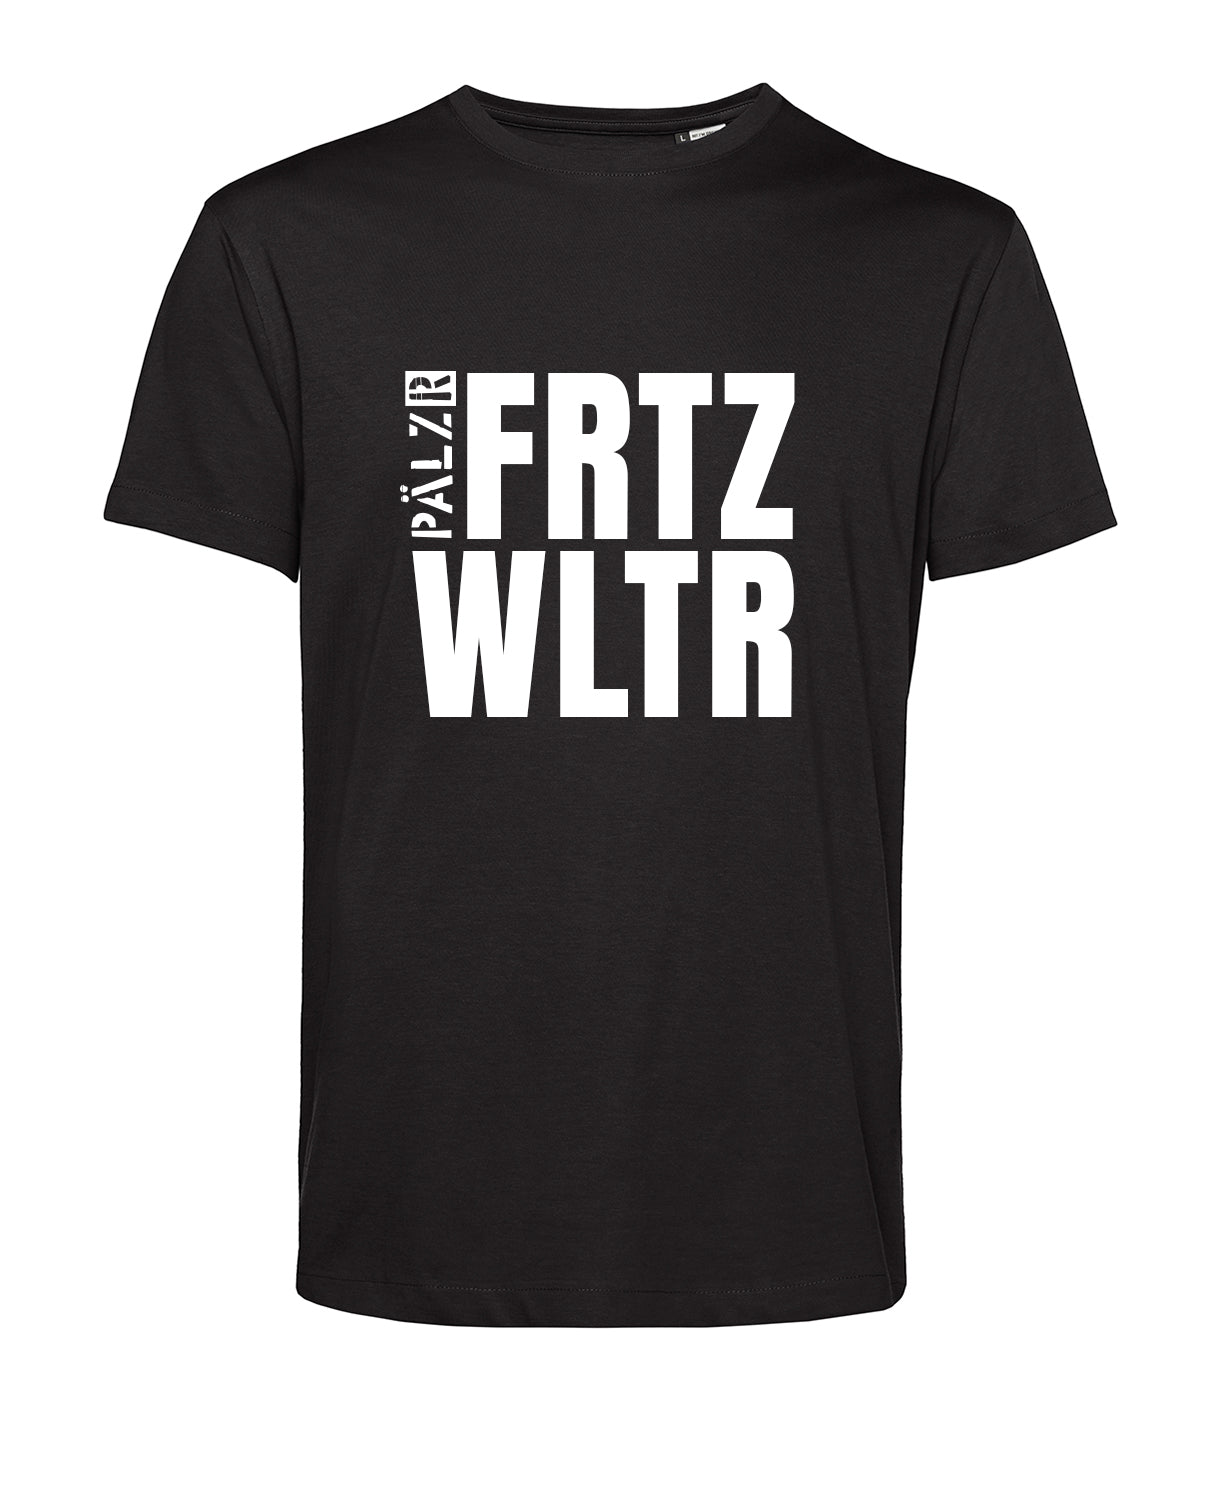 Männer T-Shirt | FRTZ WLTR | schwarz